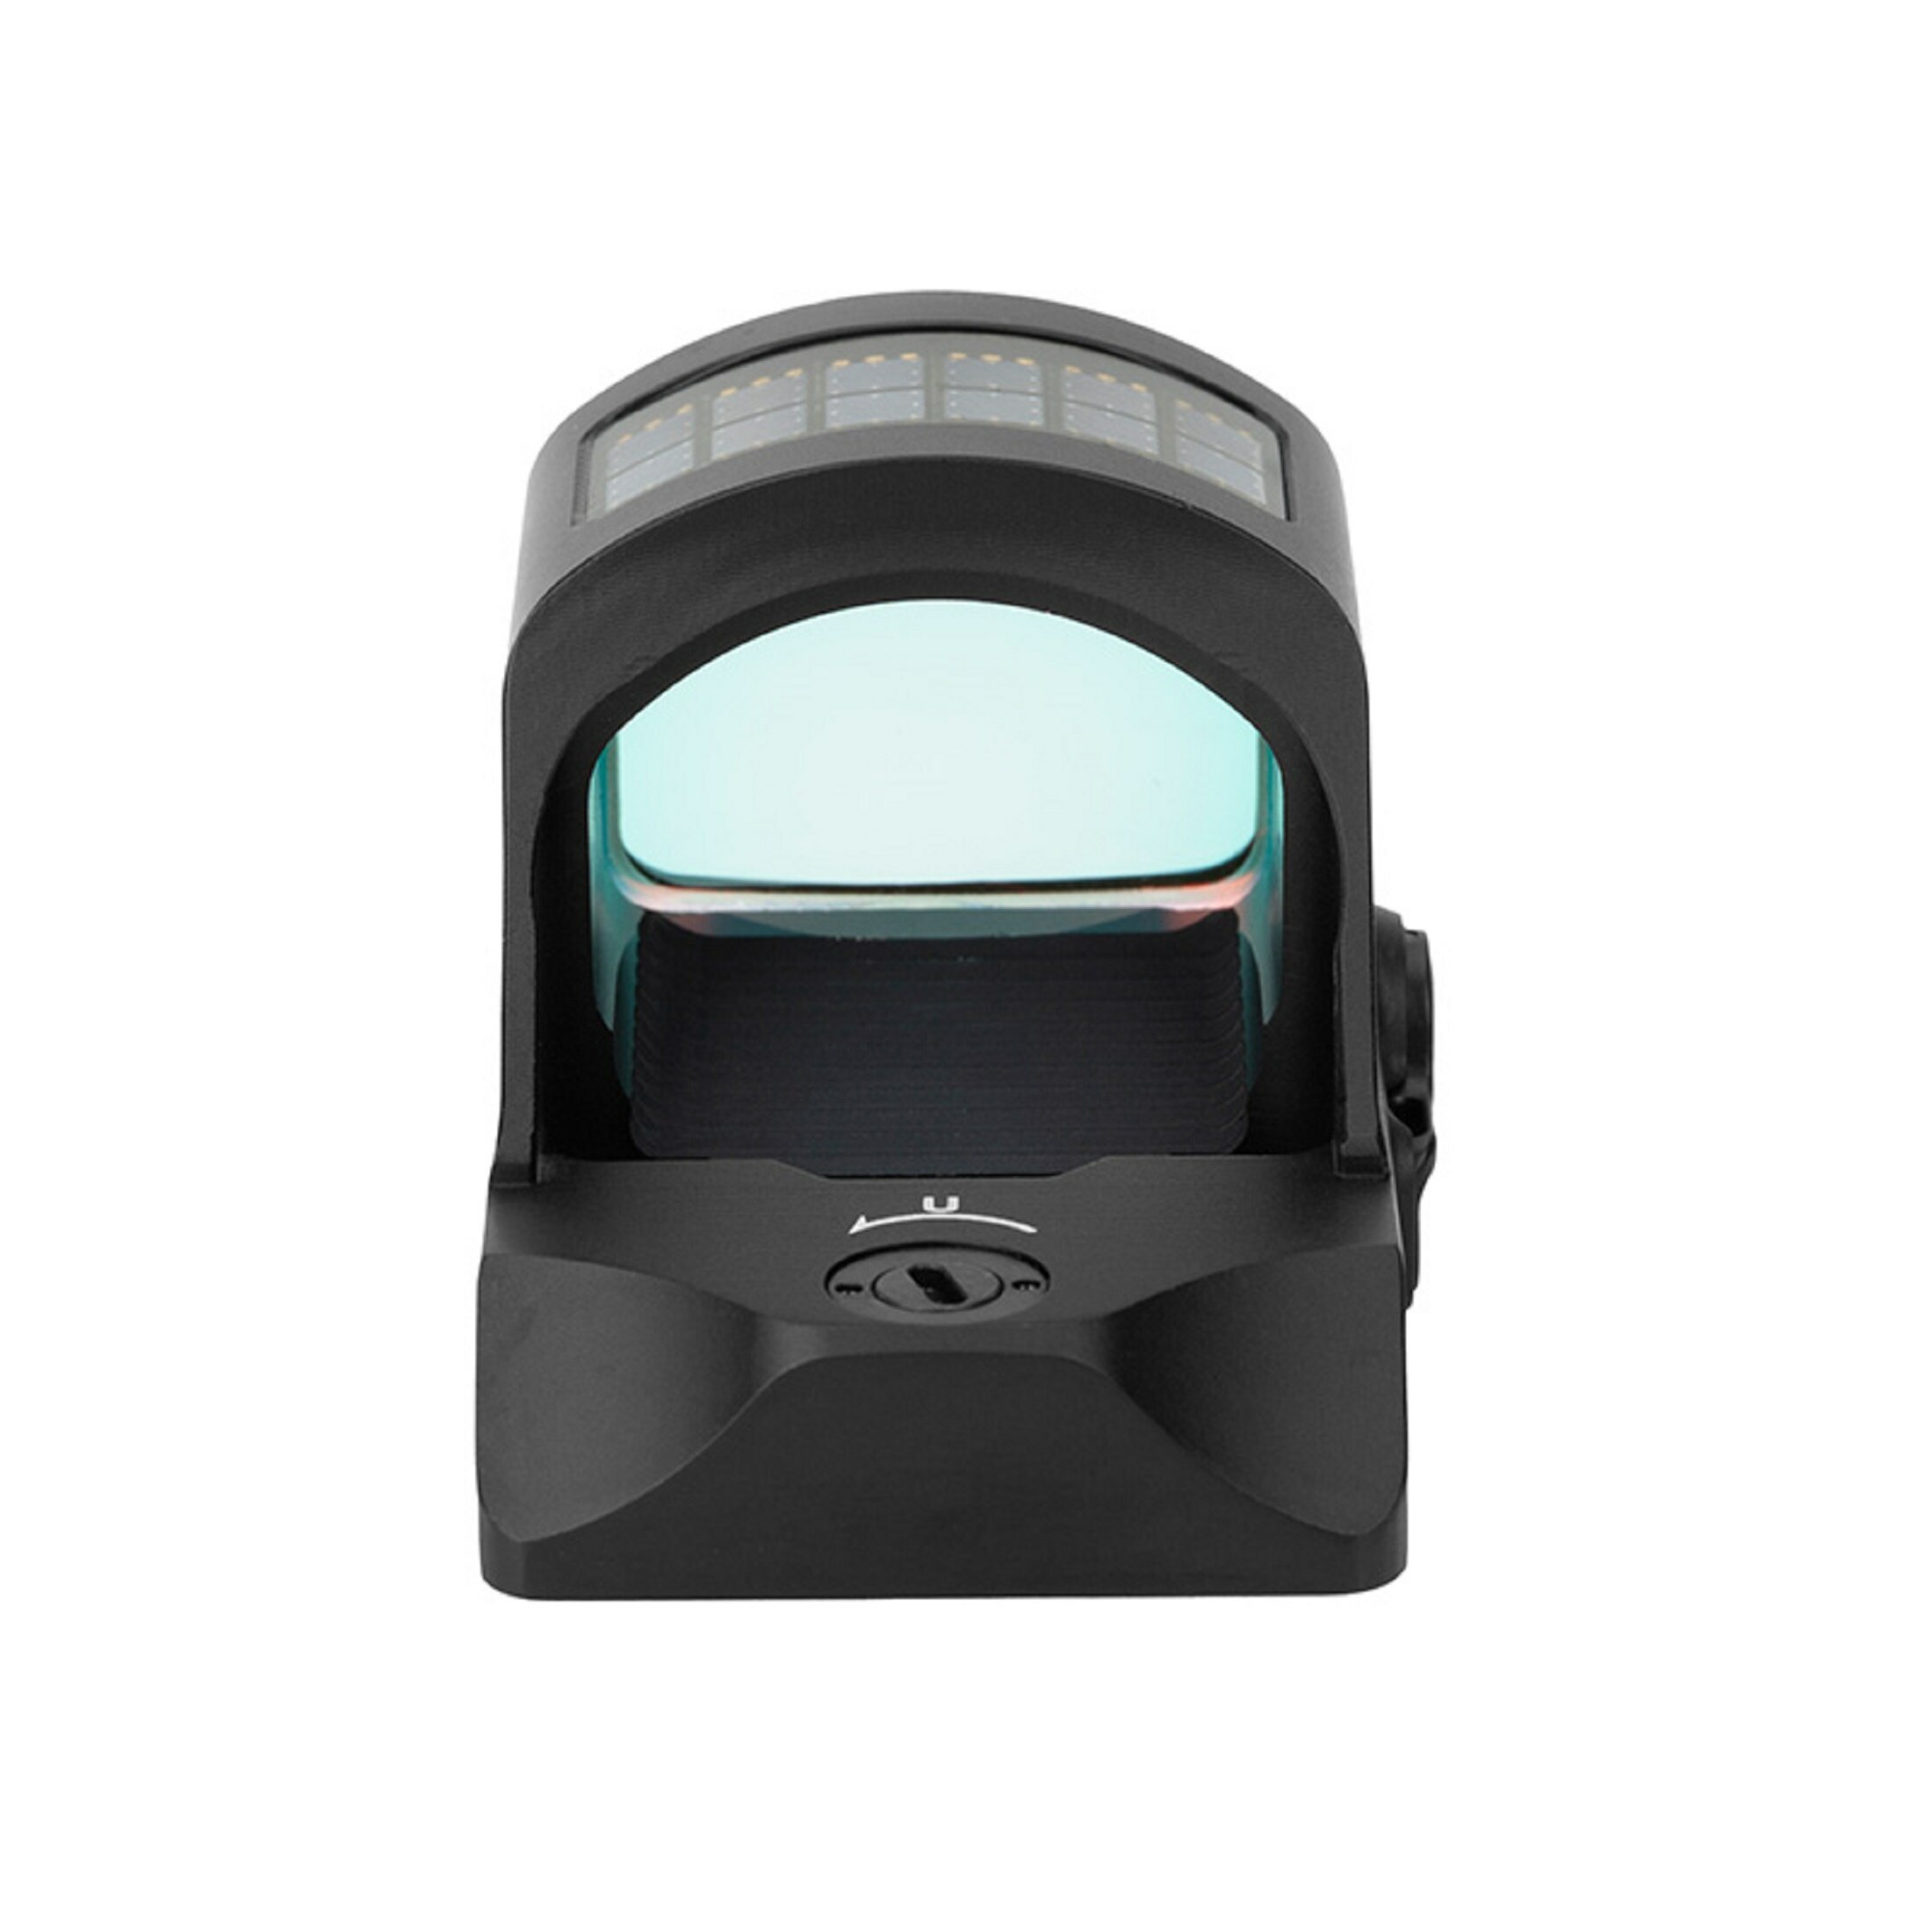 Holosun HS507C-X2 Micro Ottica di puntamento Red Dot Ottica reflex Punto circolare, ottica reflex, …